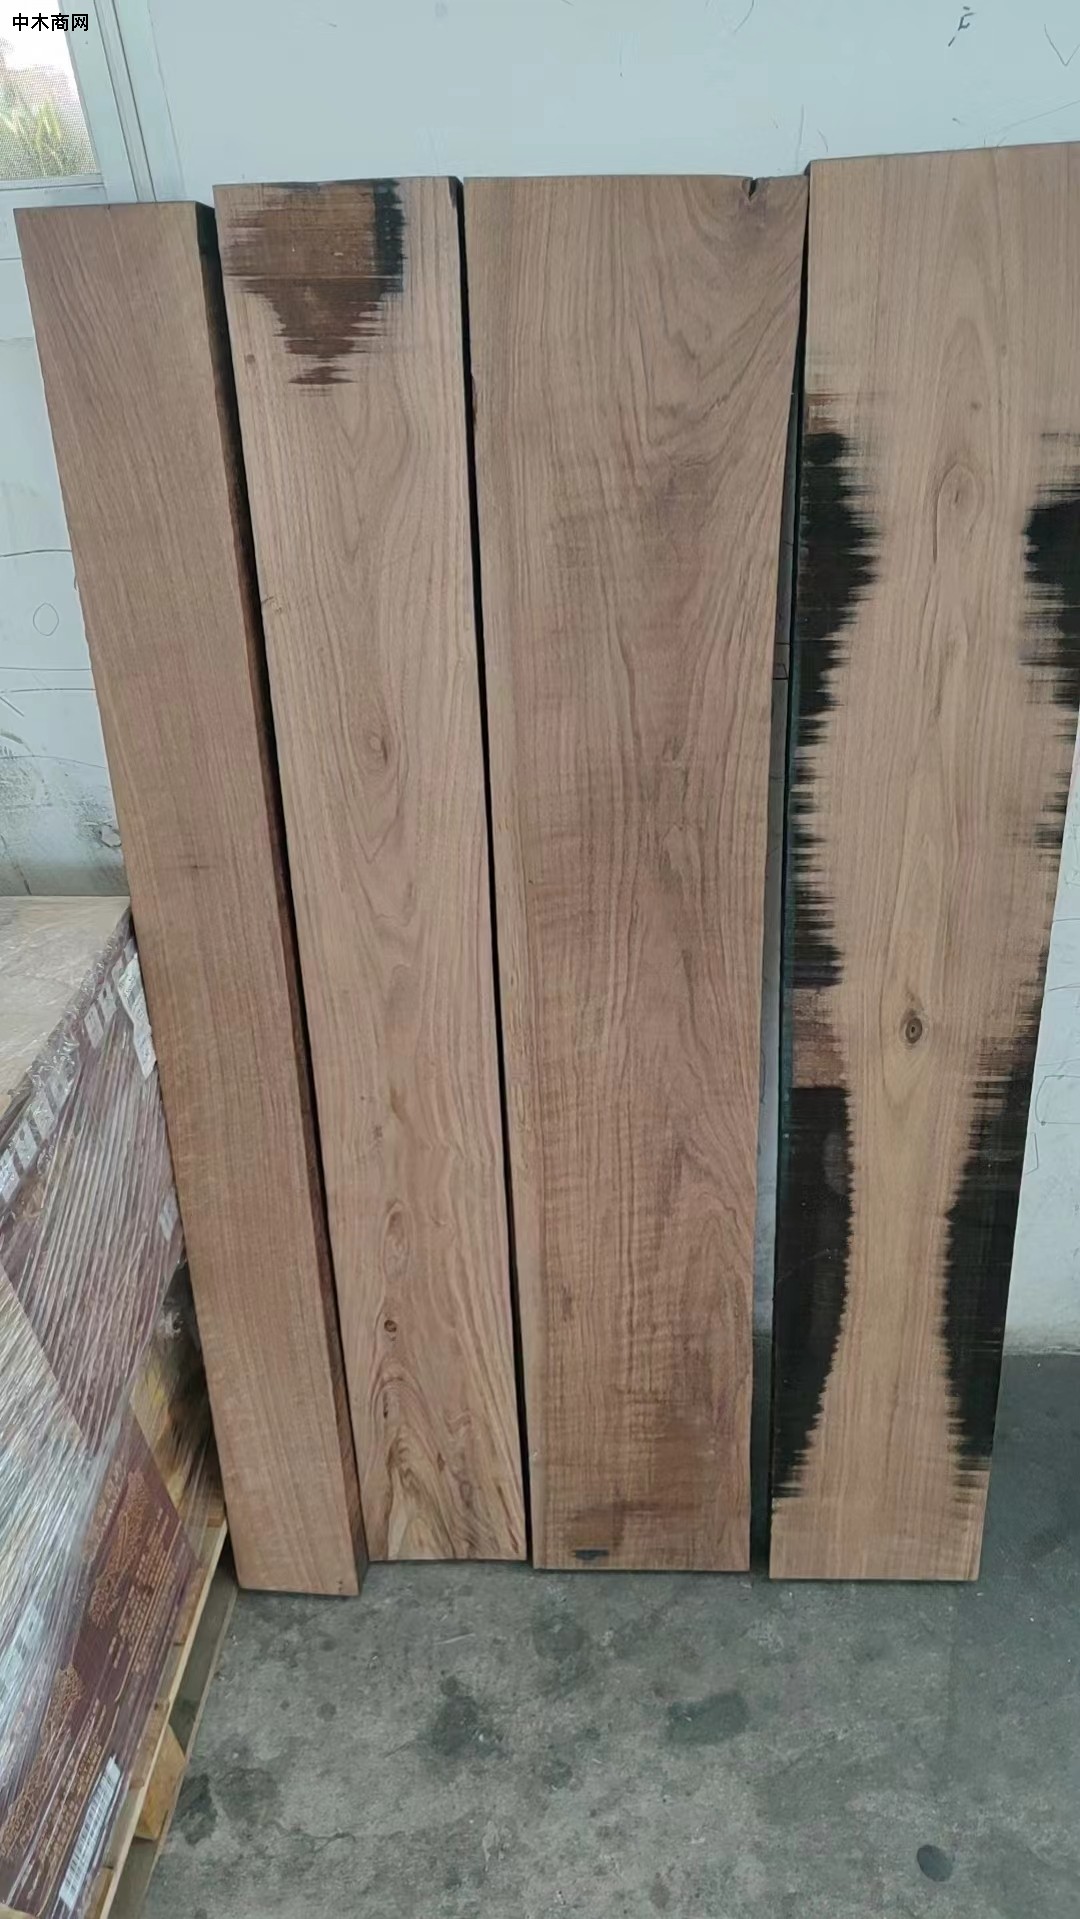 核桃木烘干板材怎么样及核桃木烘干板材的优缺点价格